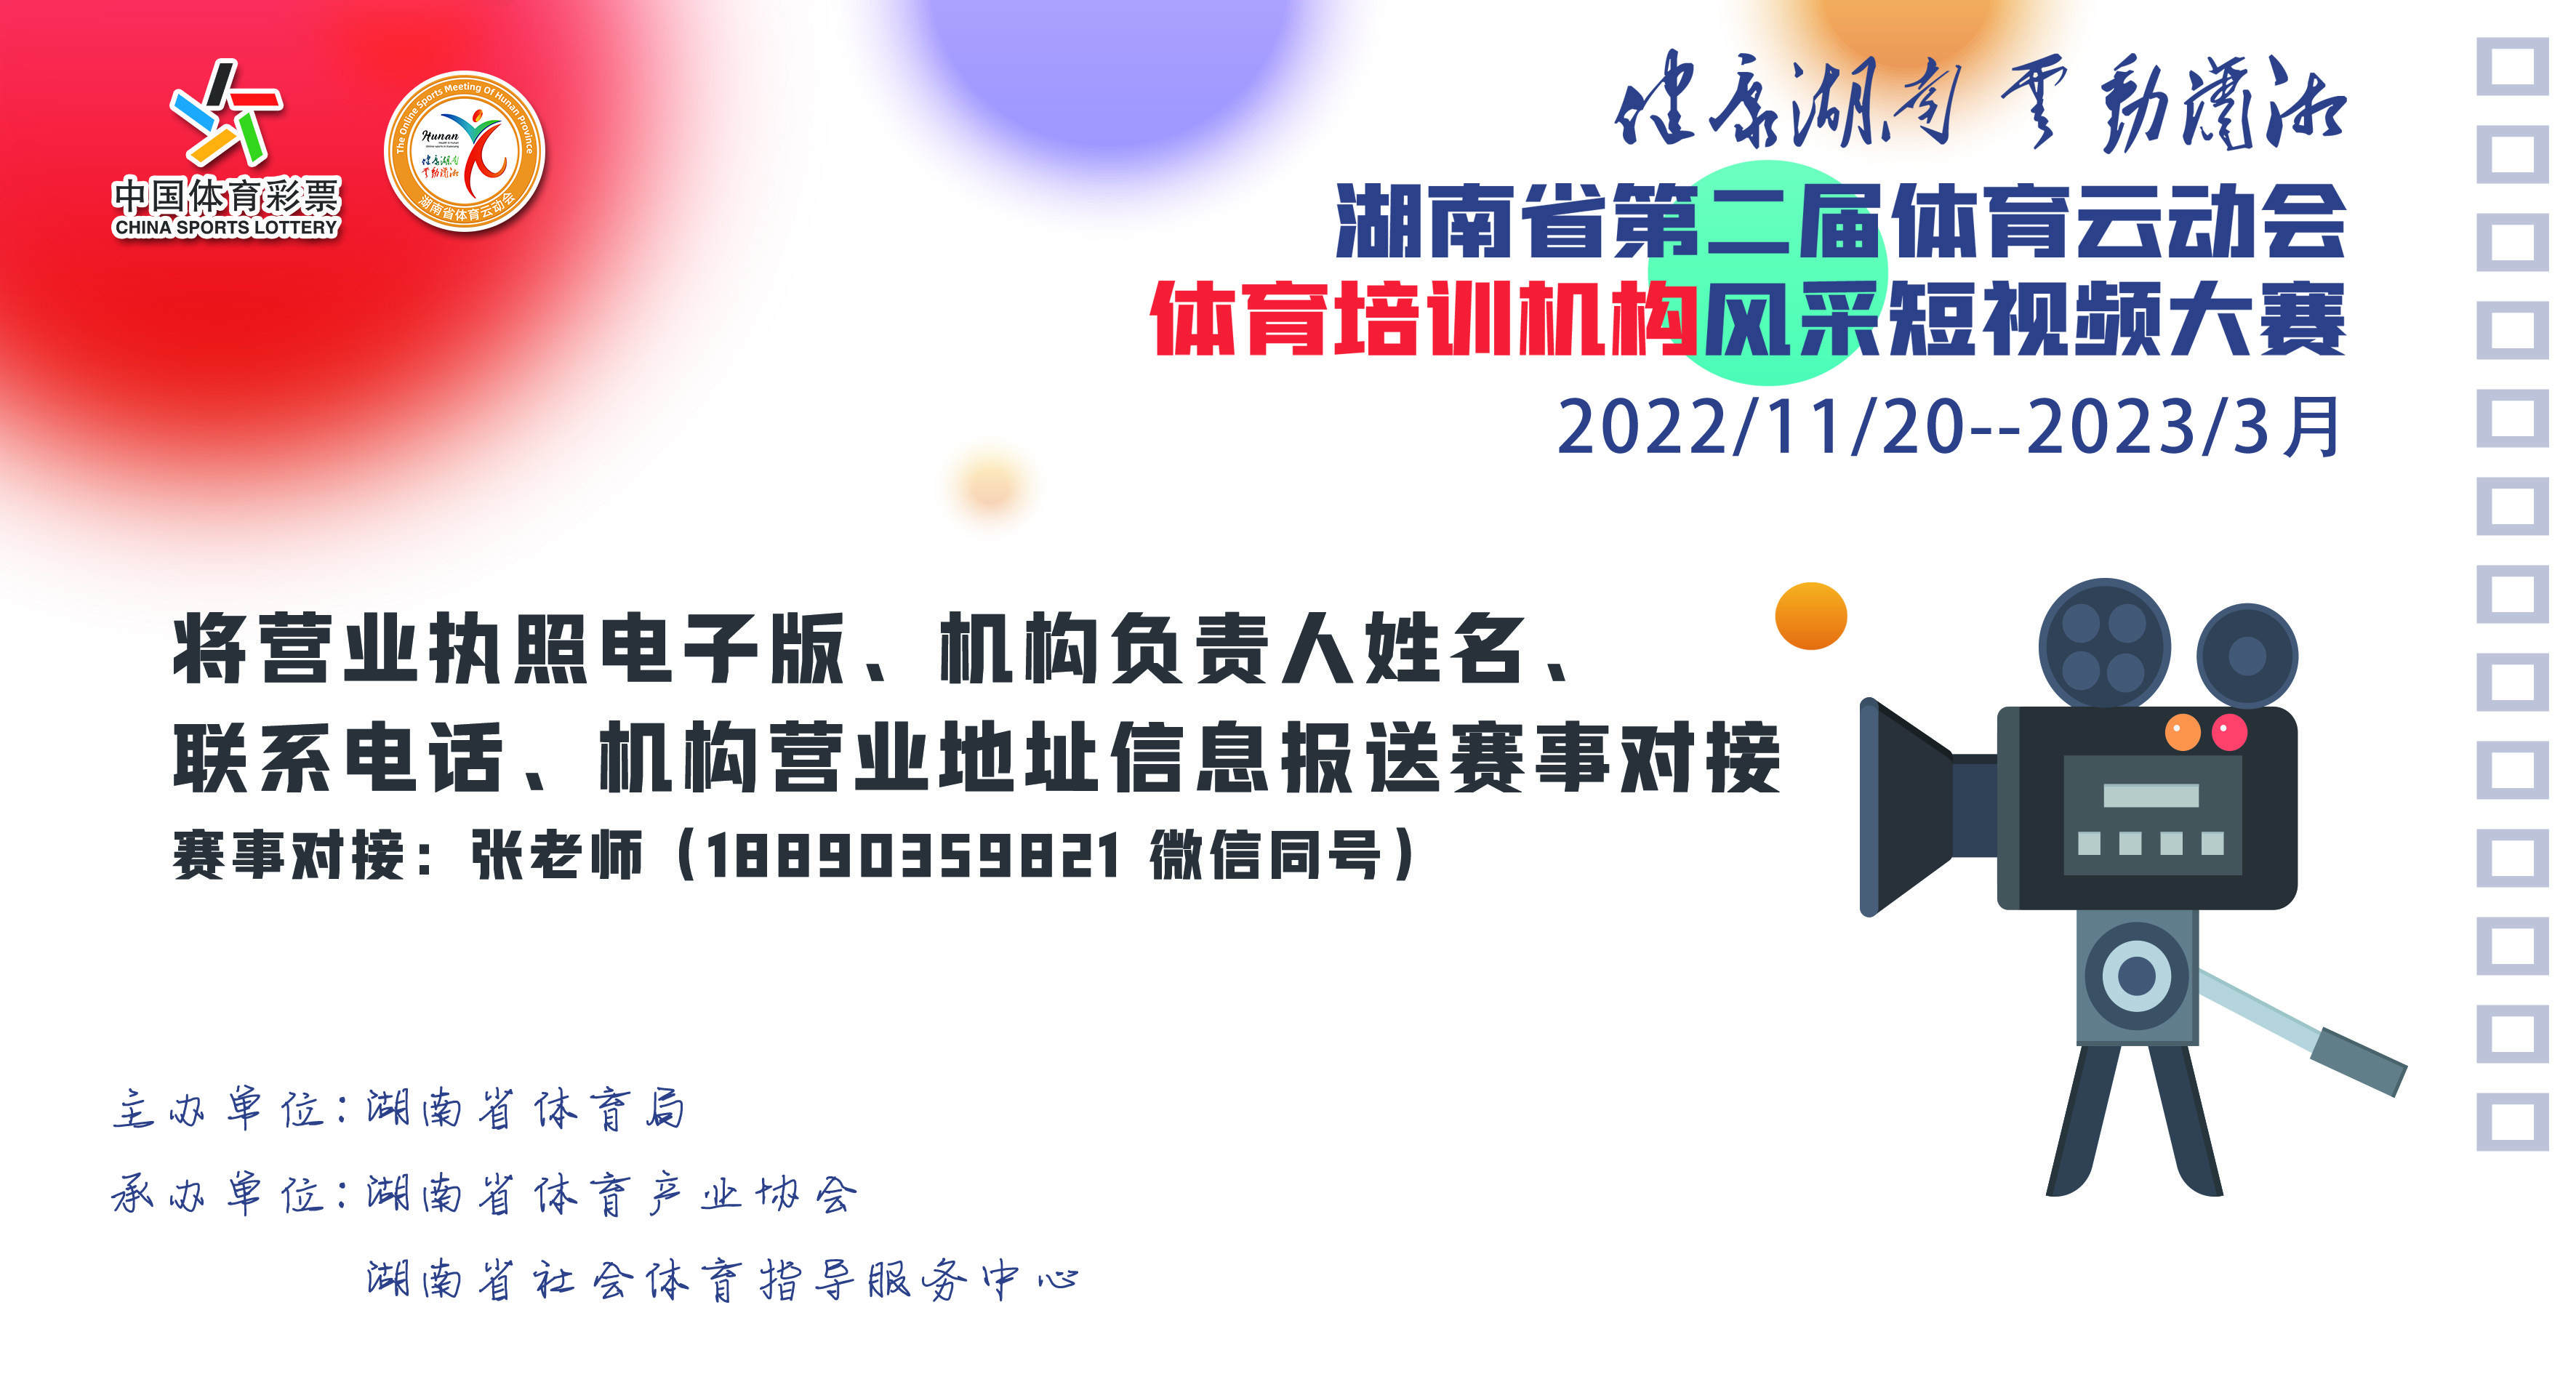 湖南省体育云动会︱体育培训机构风采短视频大赛启动